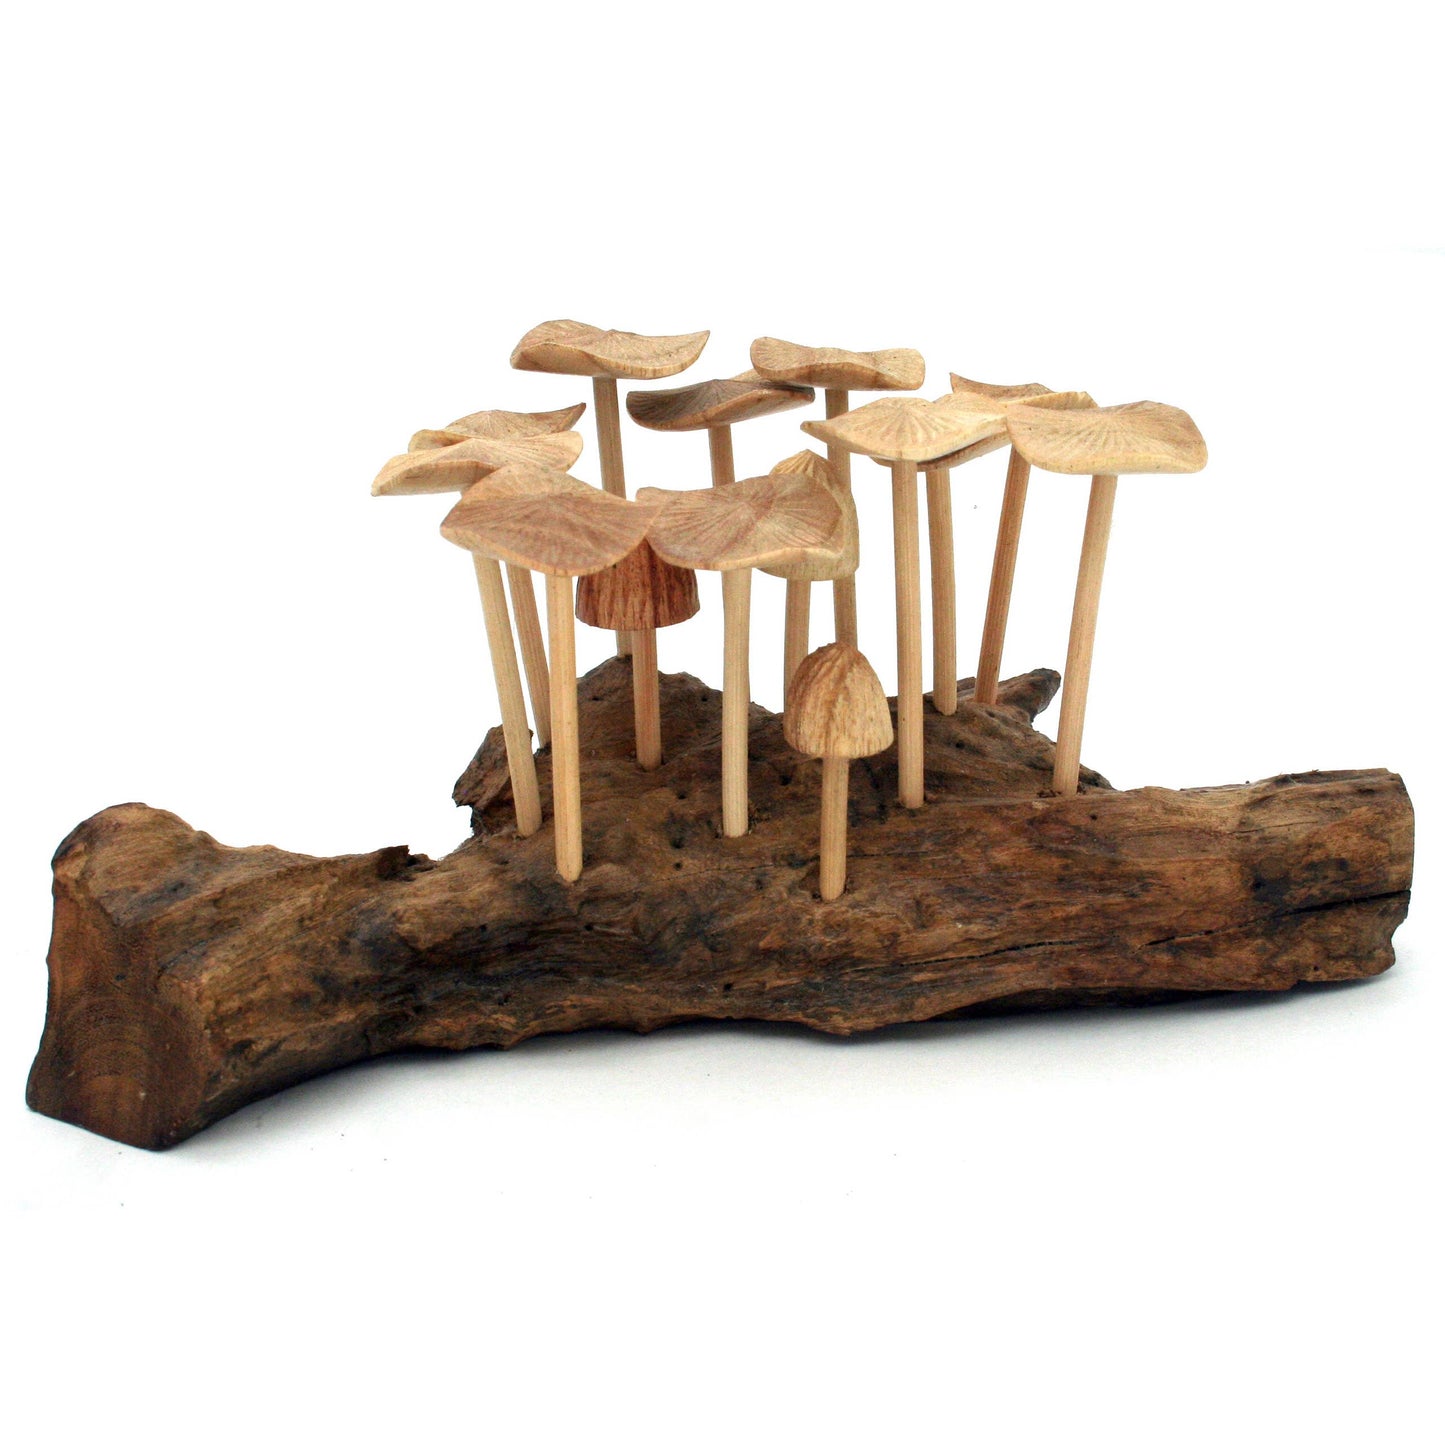 Twelve (12) Wood Mushrooms Driftwood